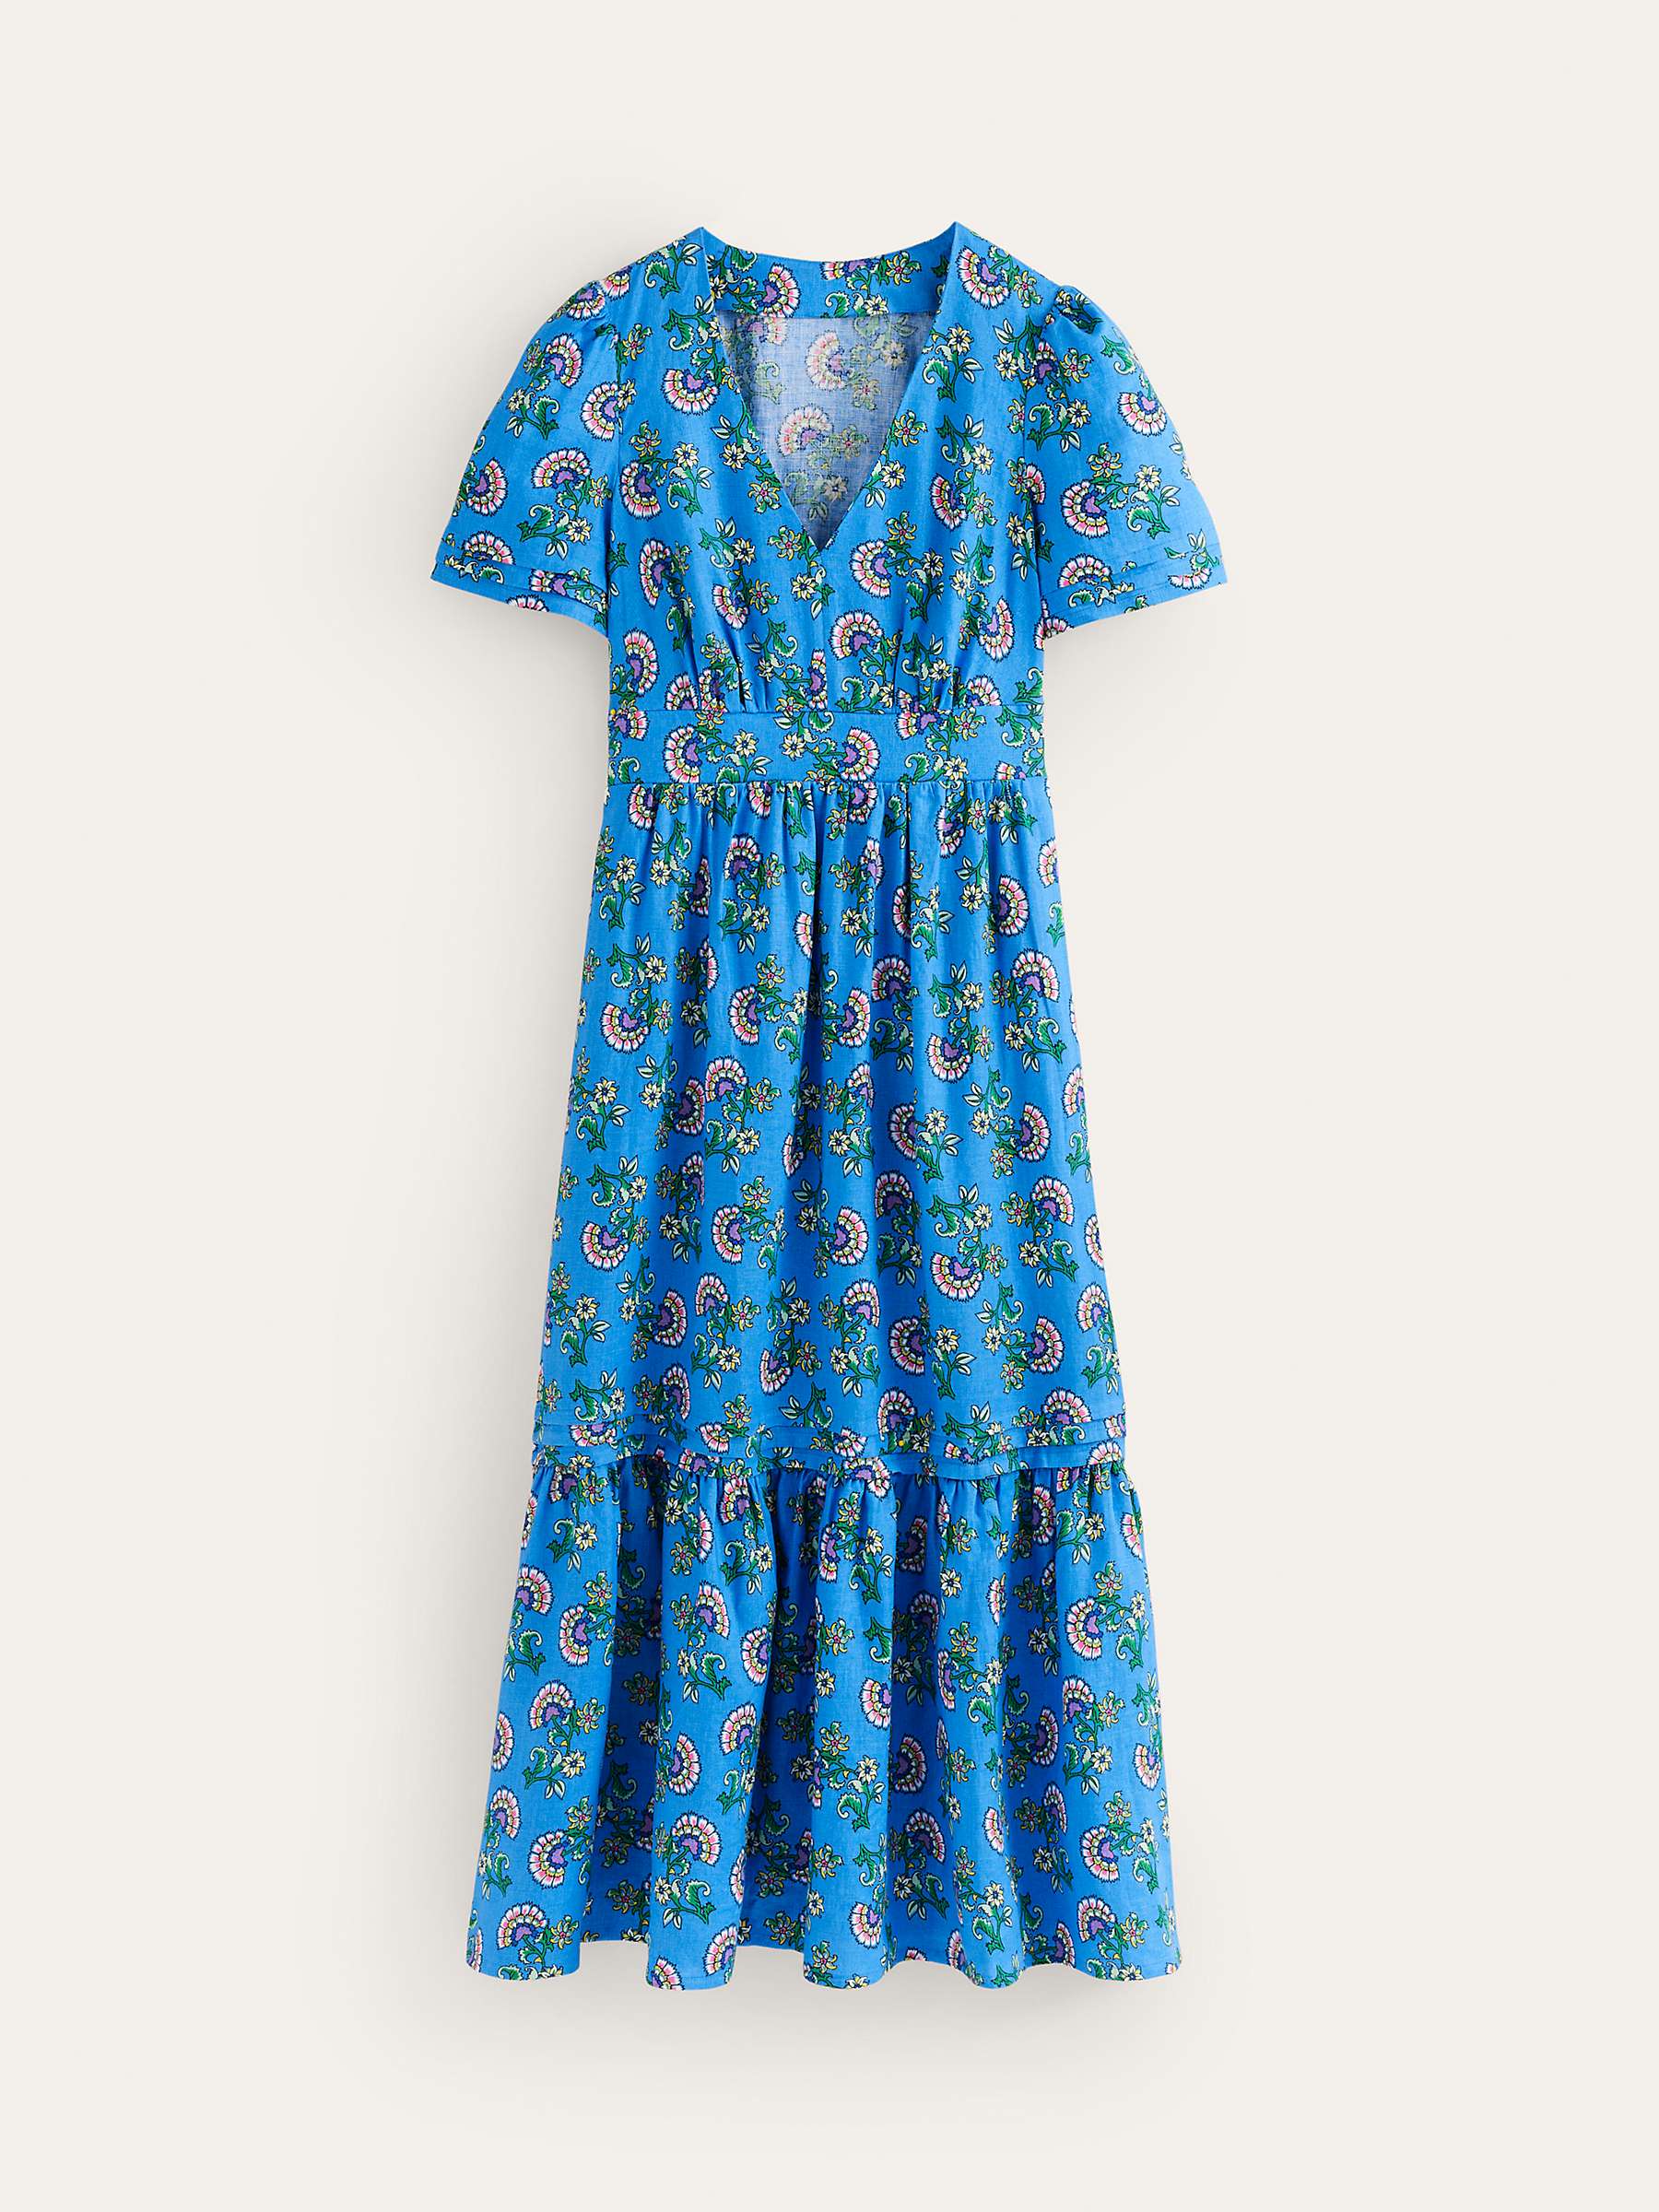 Buy Boden Eve Botanical Bunch Floral Linen Dress, Blue Online at johnlewis.com